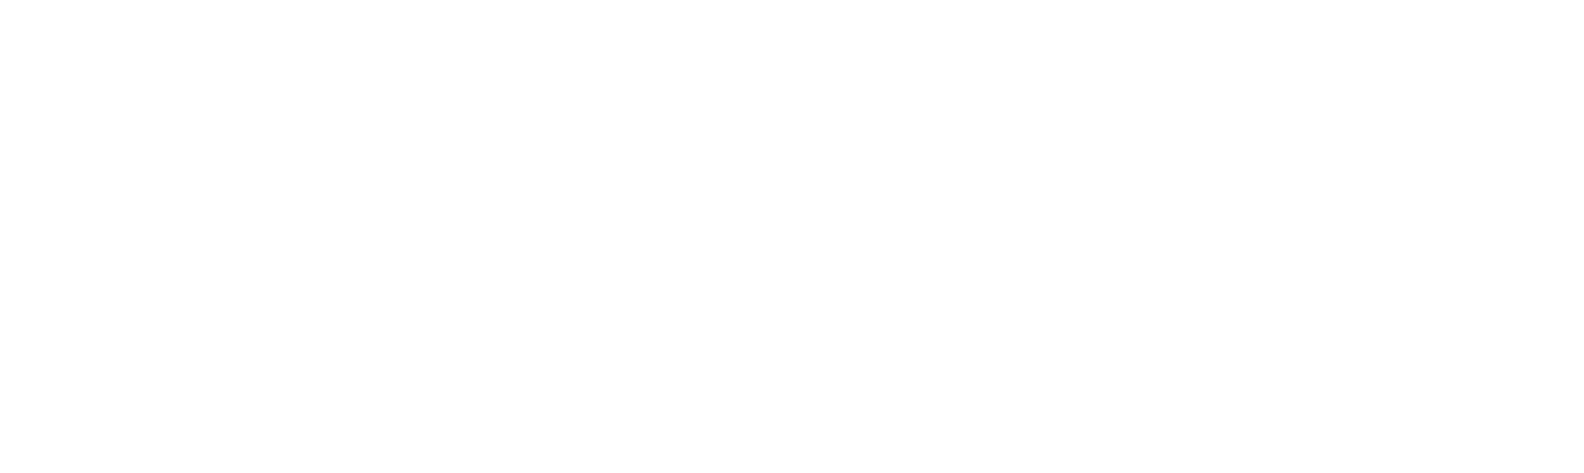 Westshore Terminals Investment Logo groß für dunkle Hintergründe (transparentes PNG)